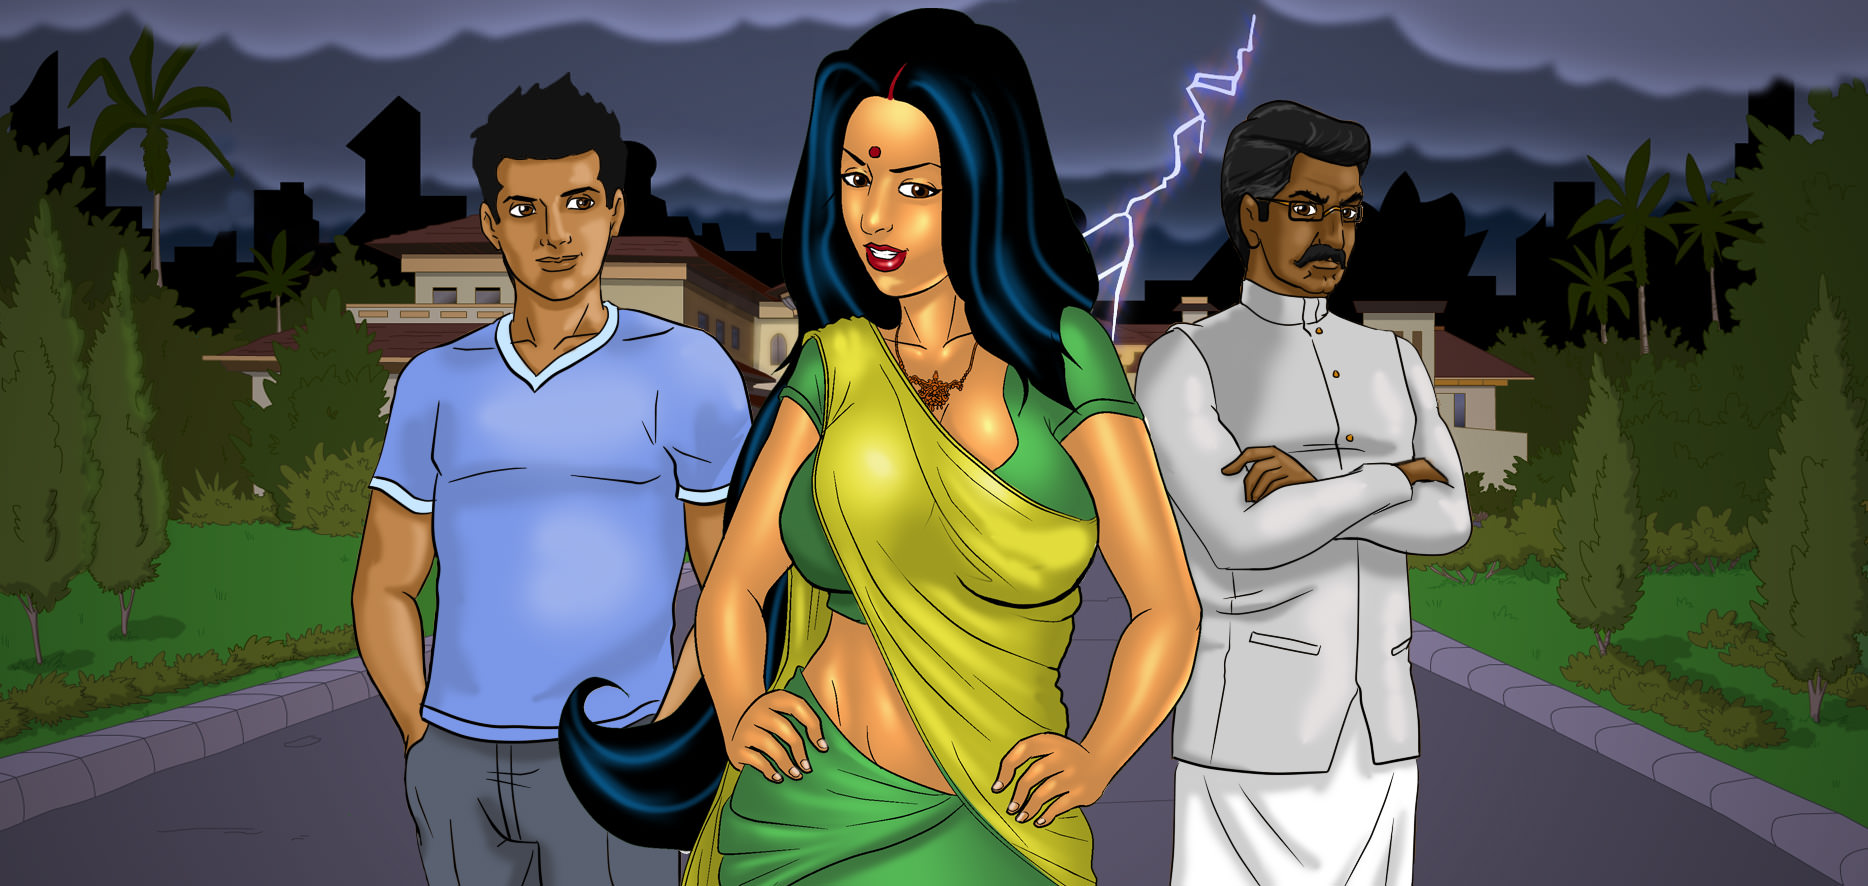 Savita Bhabhi Cartoon Full Movie In Hindi - Savita Bhabhi Movie - Free Sexy Indian Comics - FSI Comics